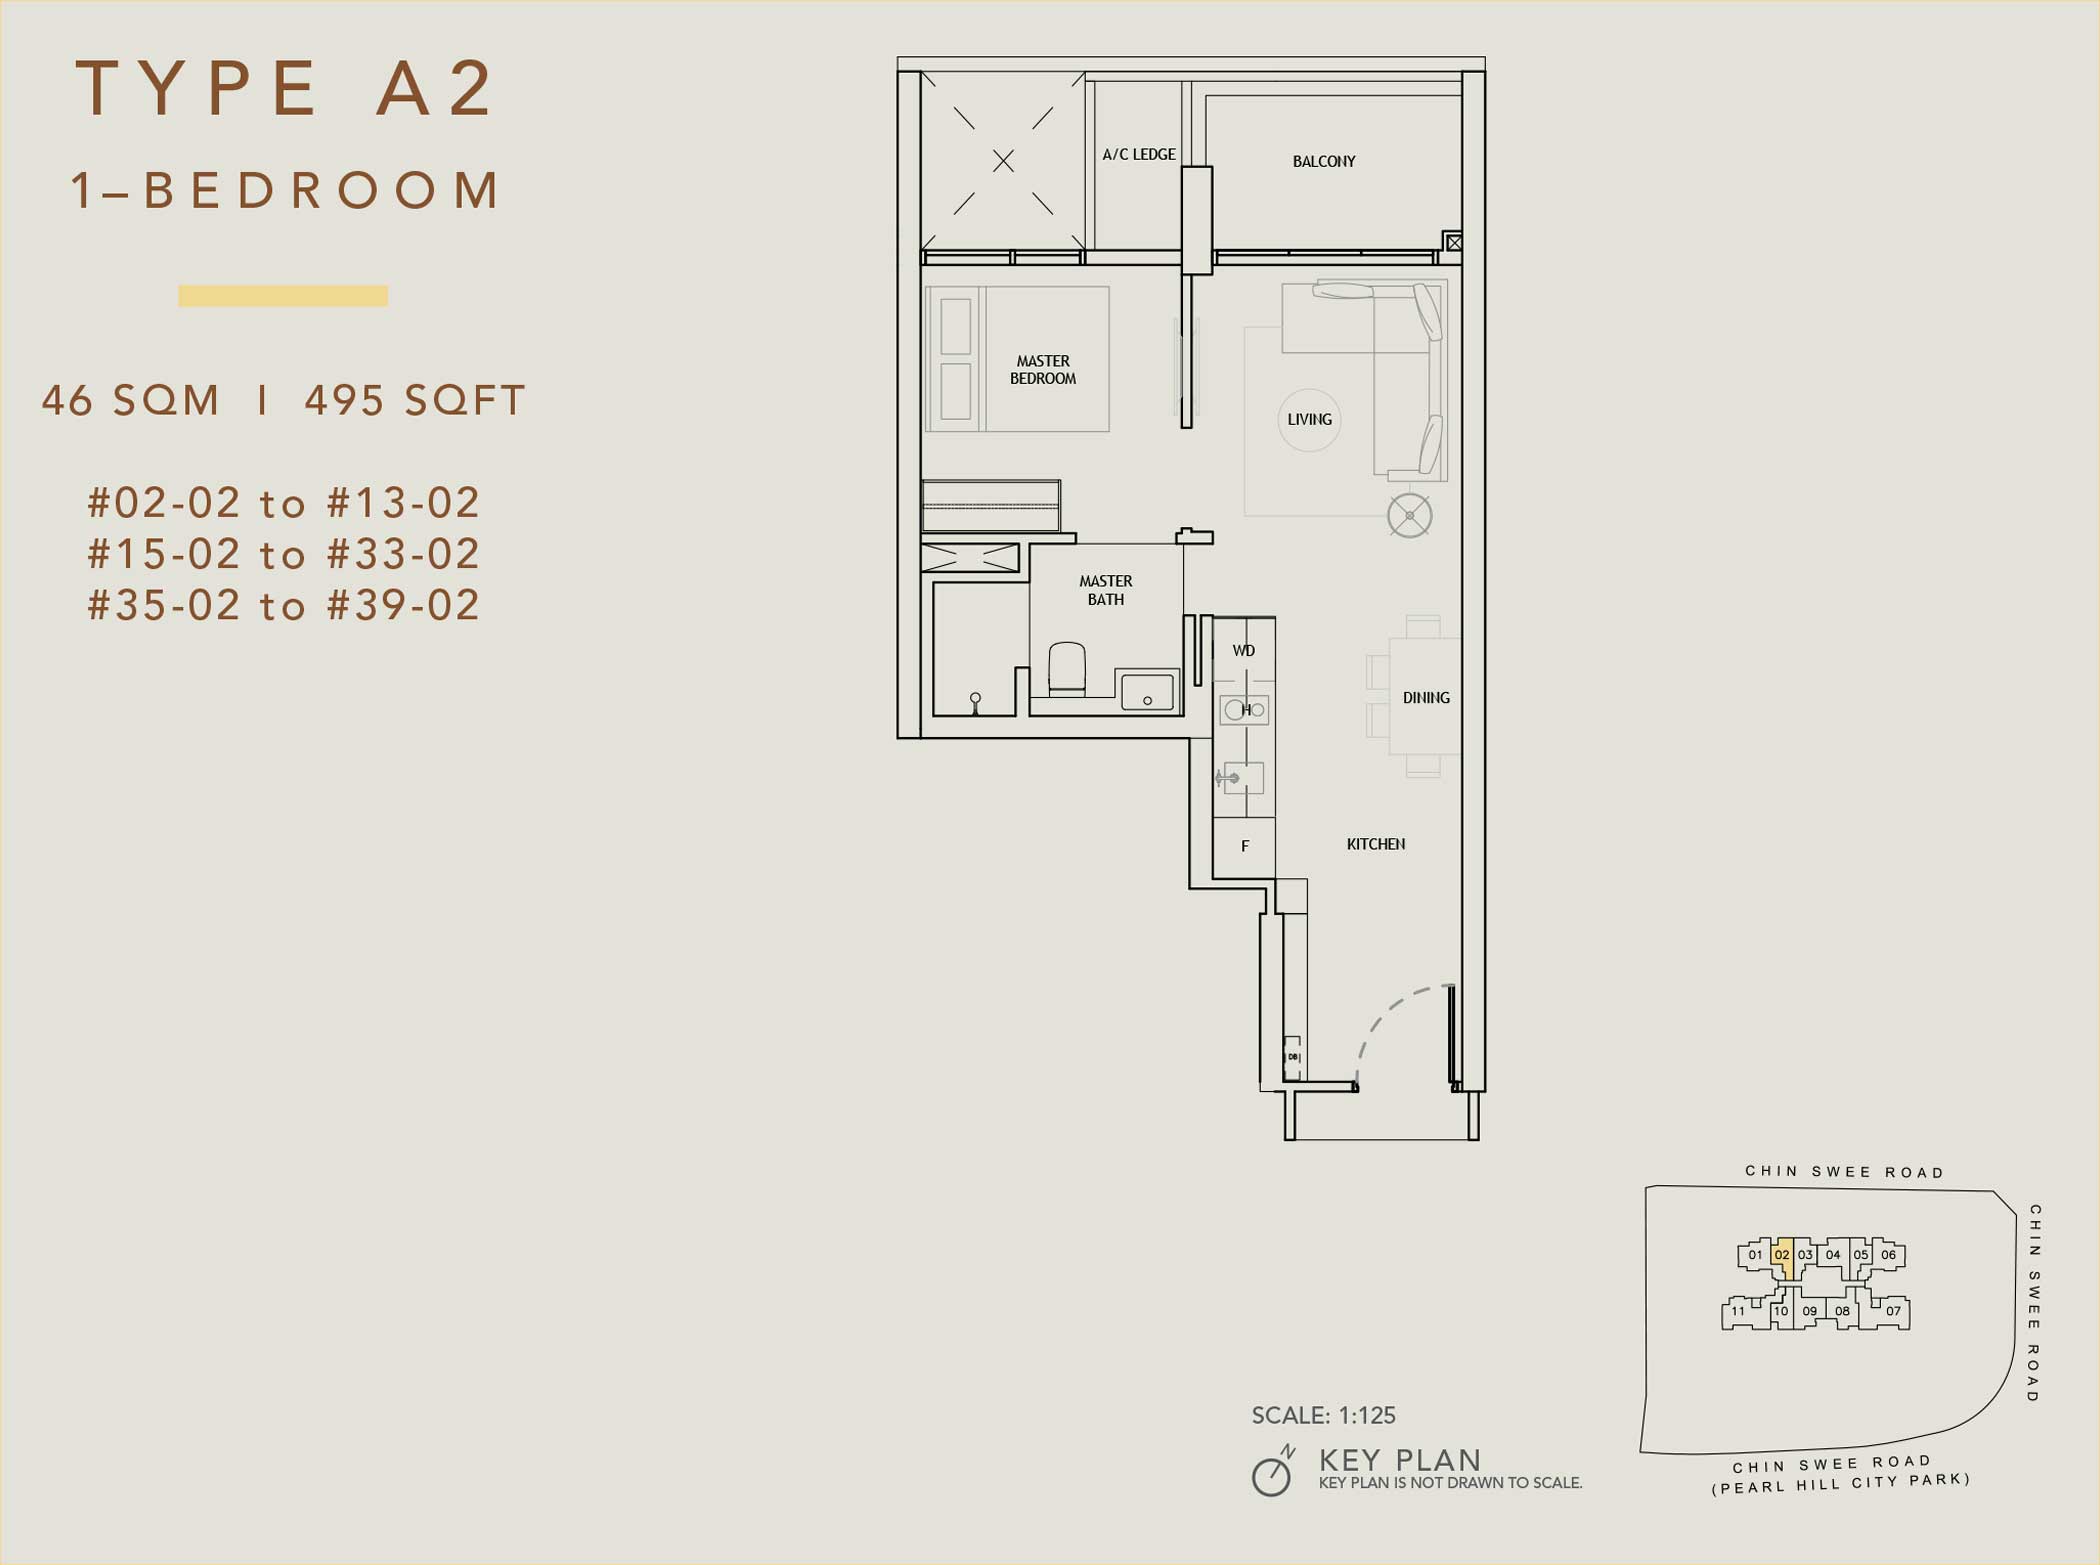 The Landmark 1-Bedroom Floor Plan (Type A2)